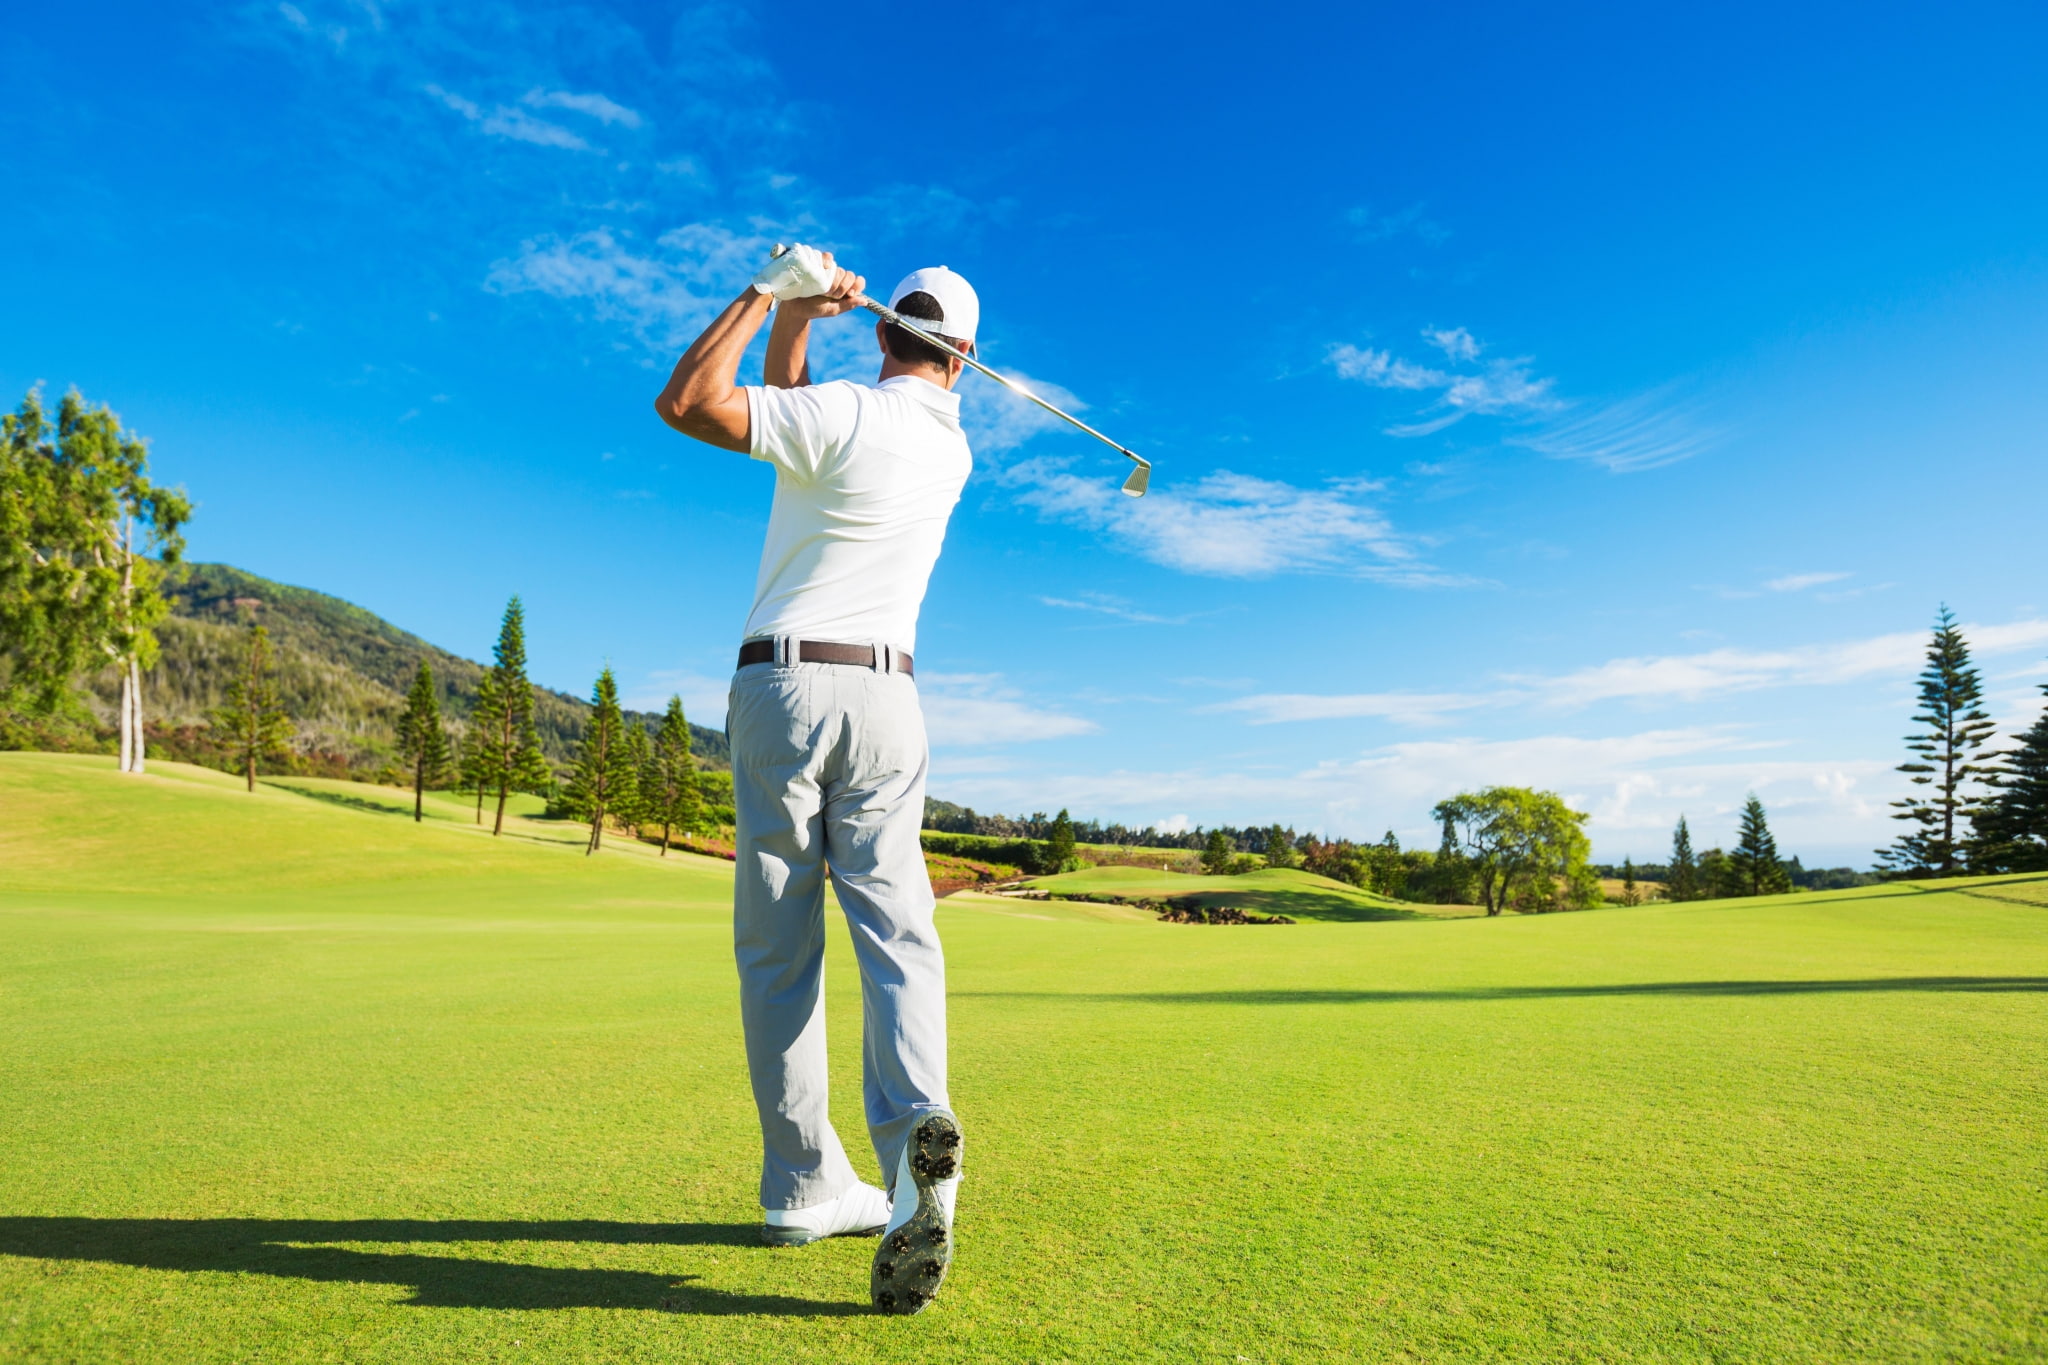 golf hd widescreen  for laptop, sport, golf course, grass, leisure activity